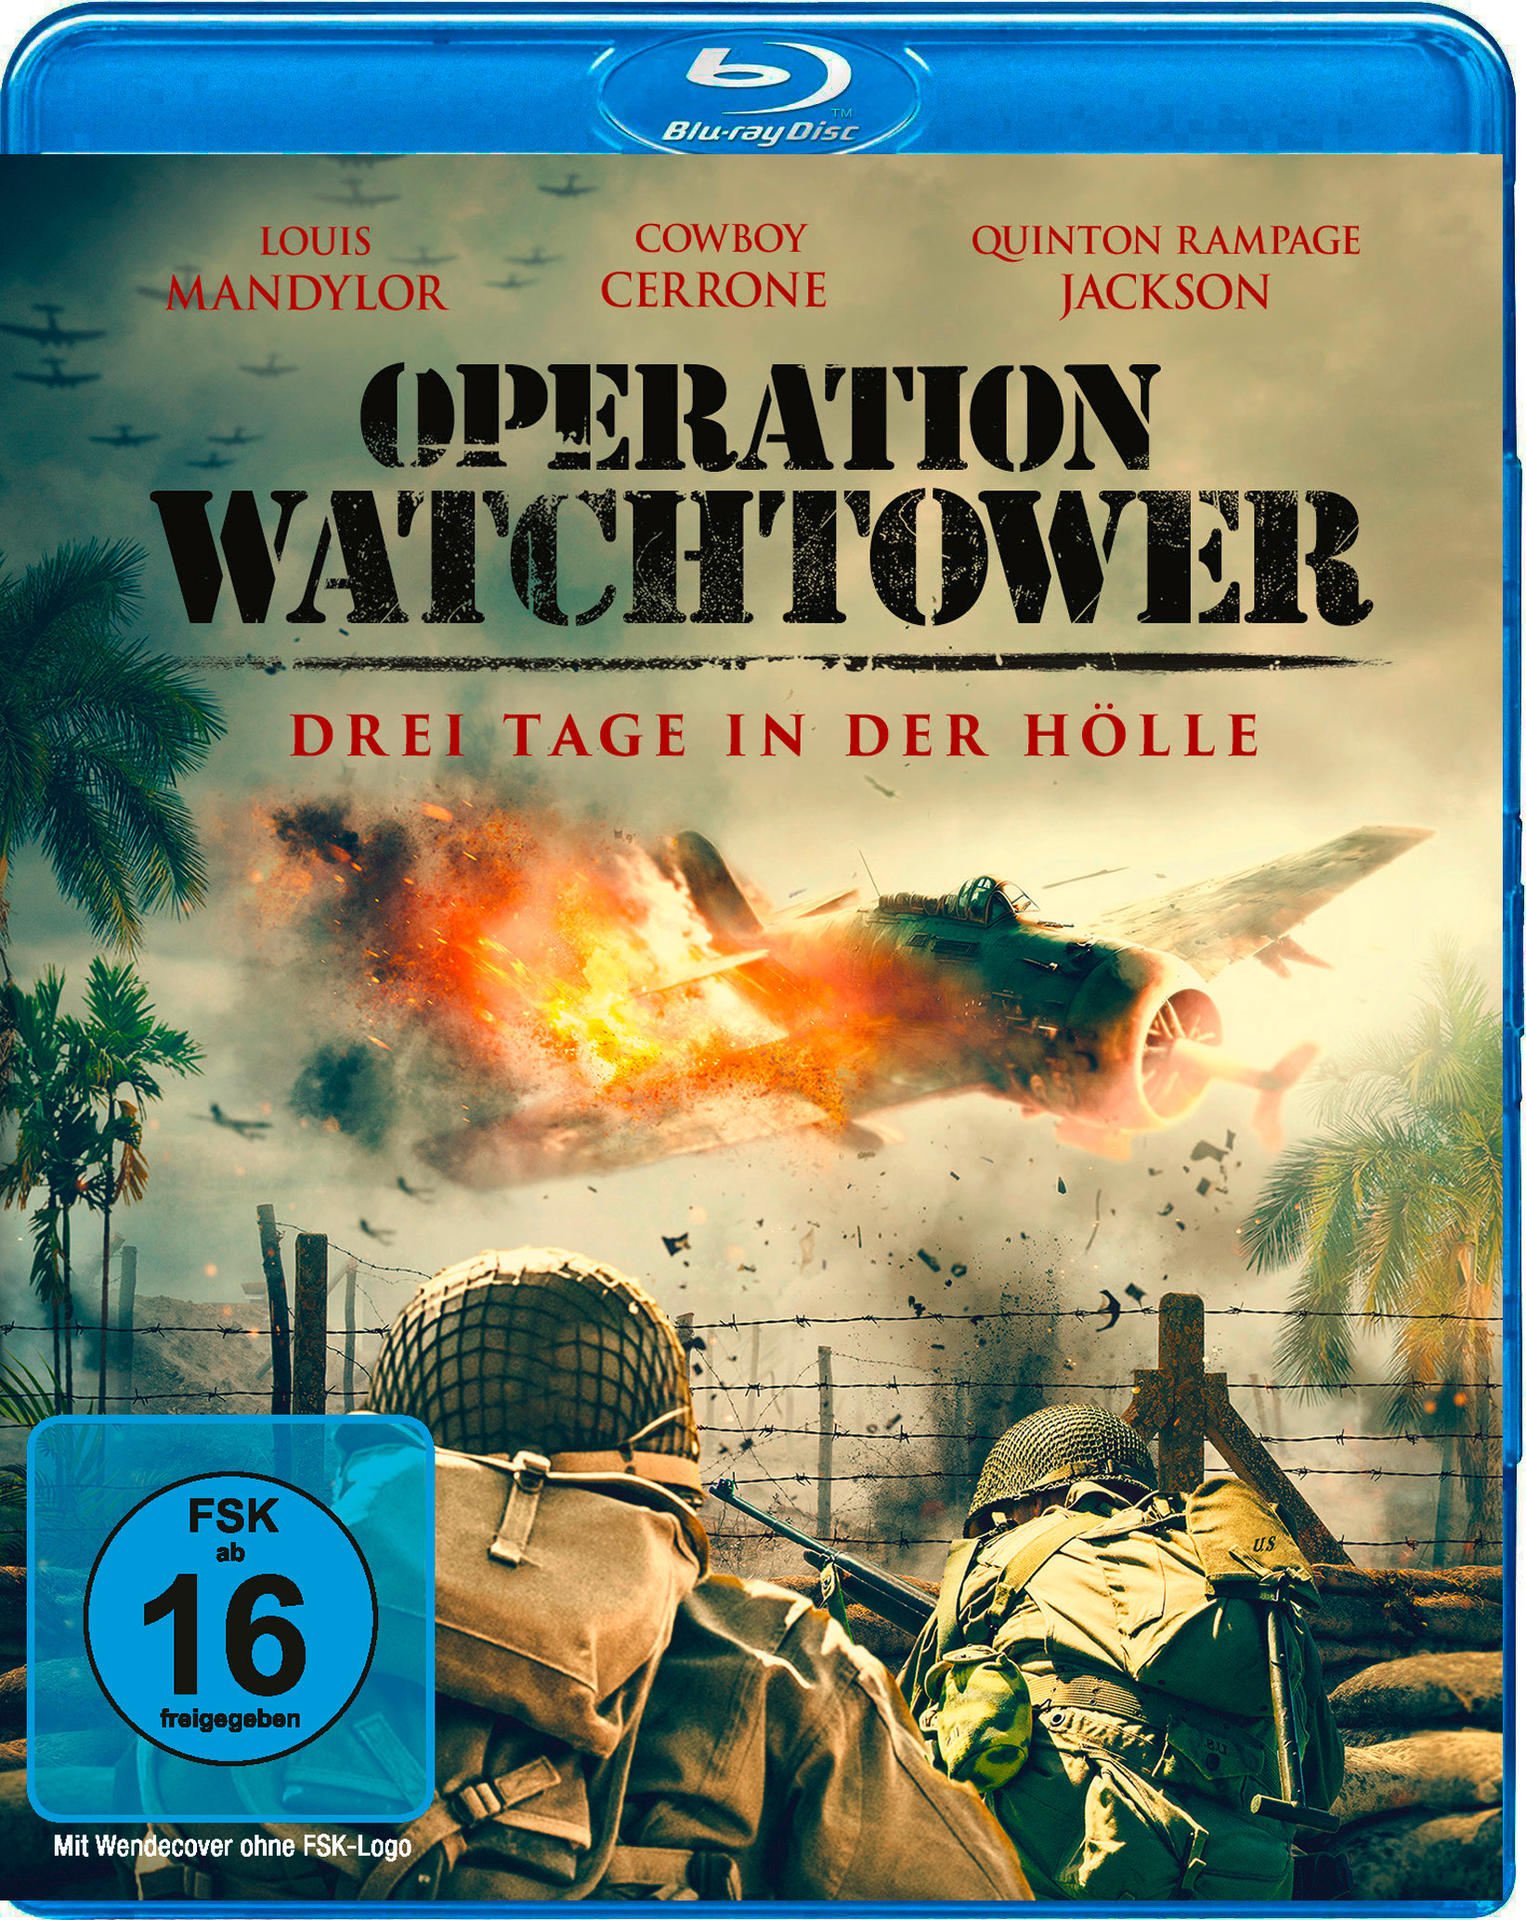 Operation Watchtower - Drei Tage in Blu-ray der Hölle